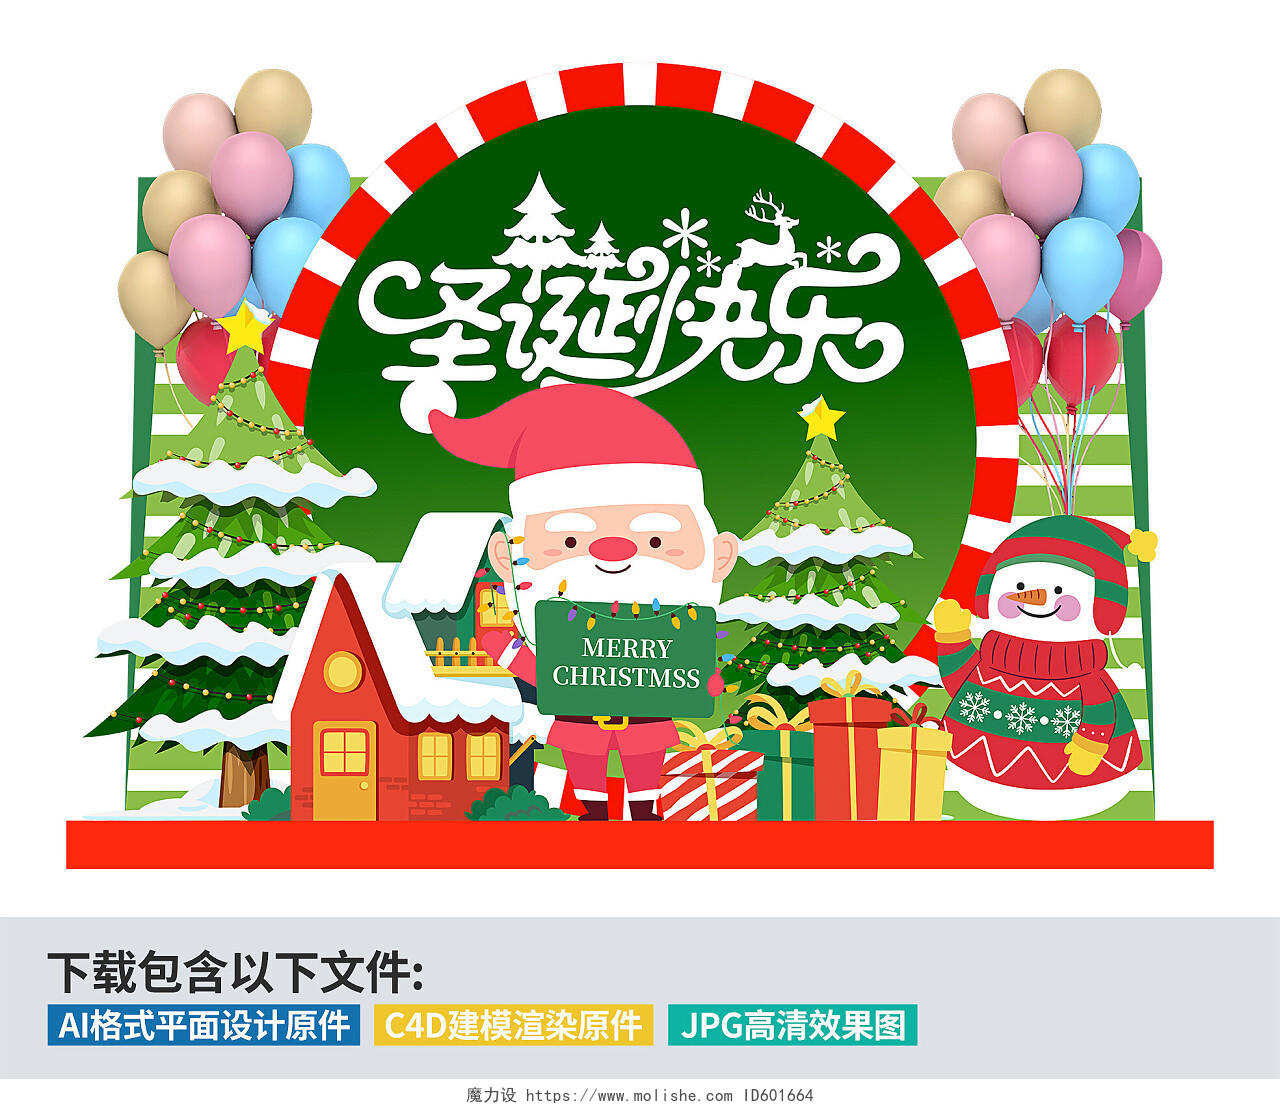 创意红绿搭配商场圣诞节冬季宣传圣诞快乐主题美陈